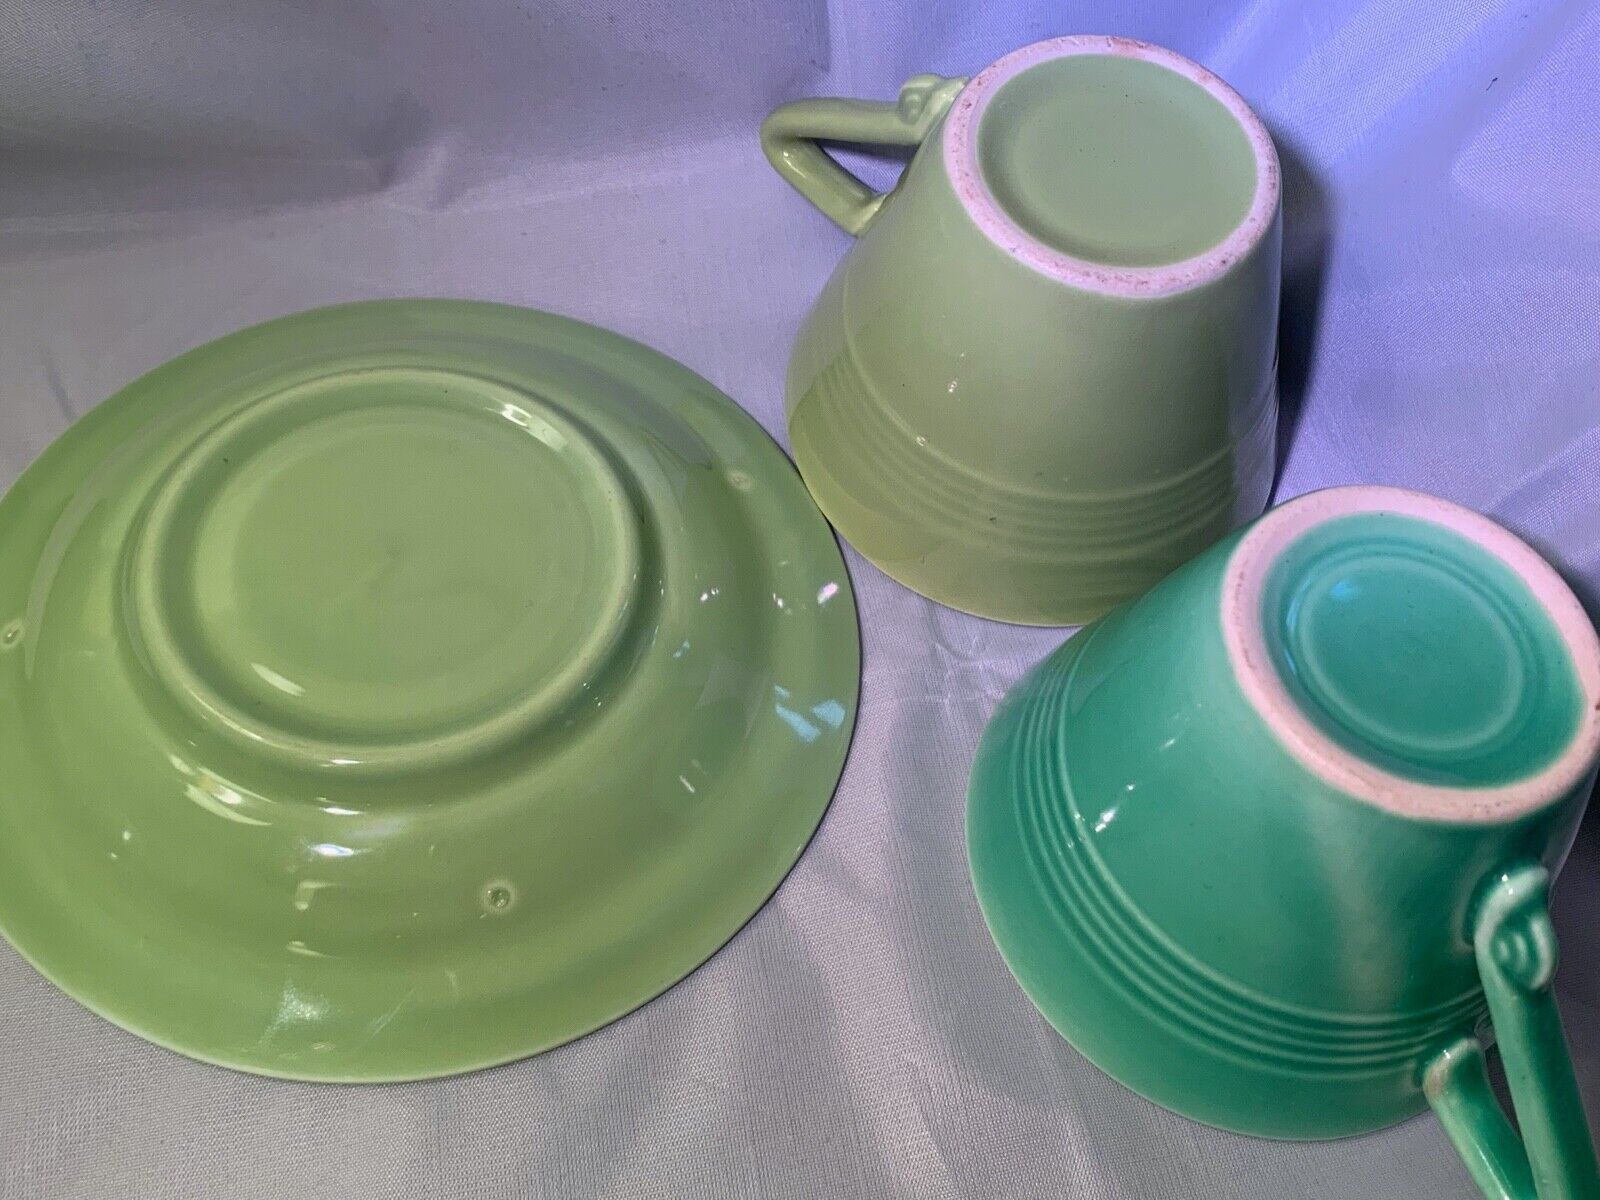 vtg Harlequin Homer Laughlin Fiesta ware green CUP SAUCER SET medium light teal